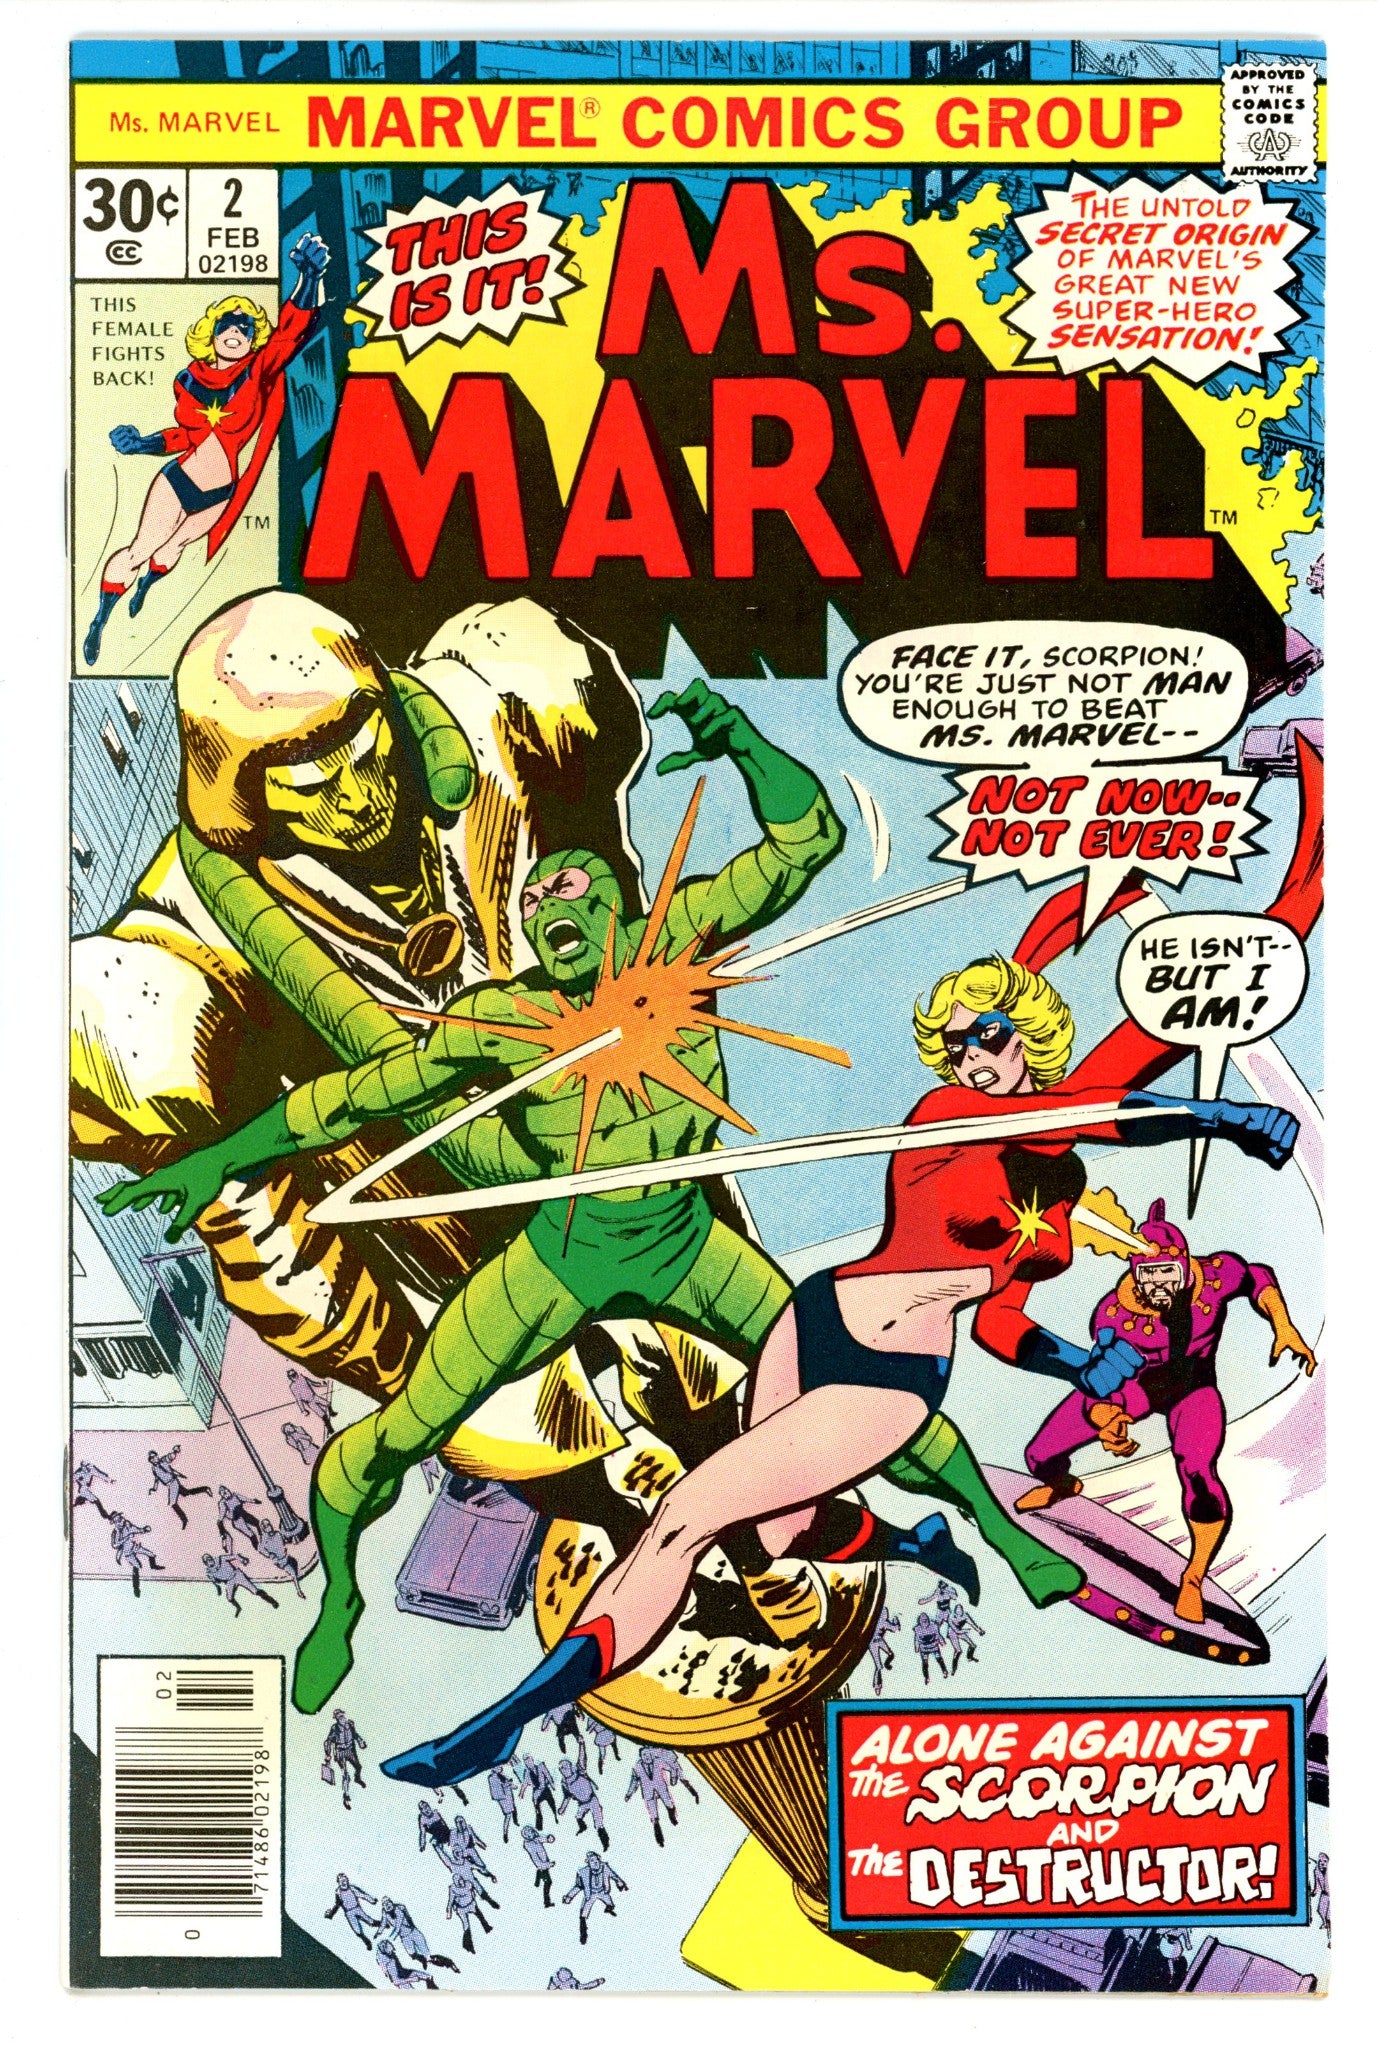 Ms. Marvel Vol 1 2 VF (8.0) (1977) 